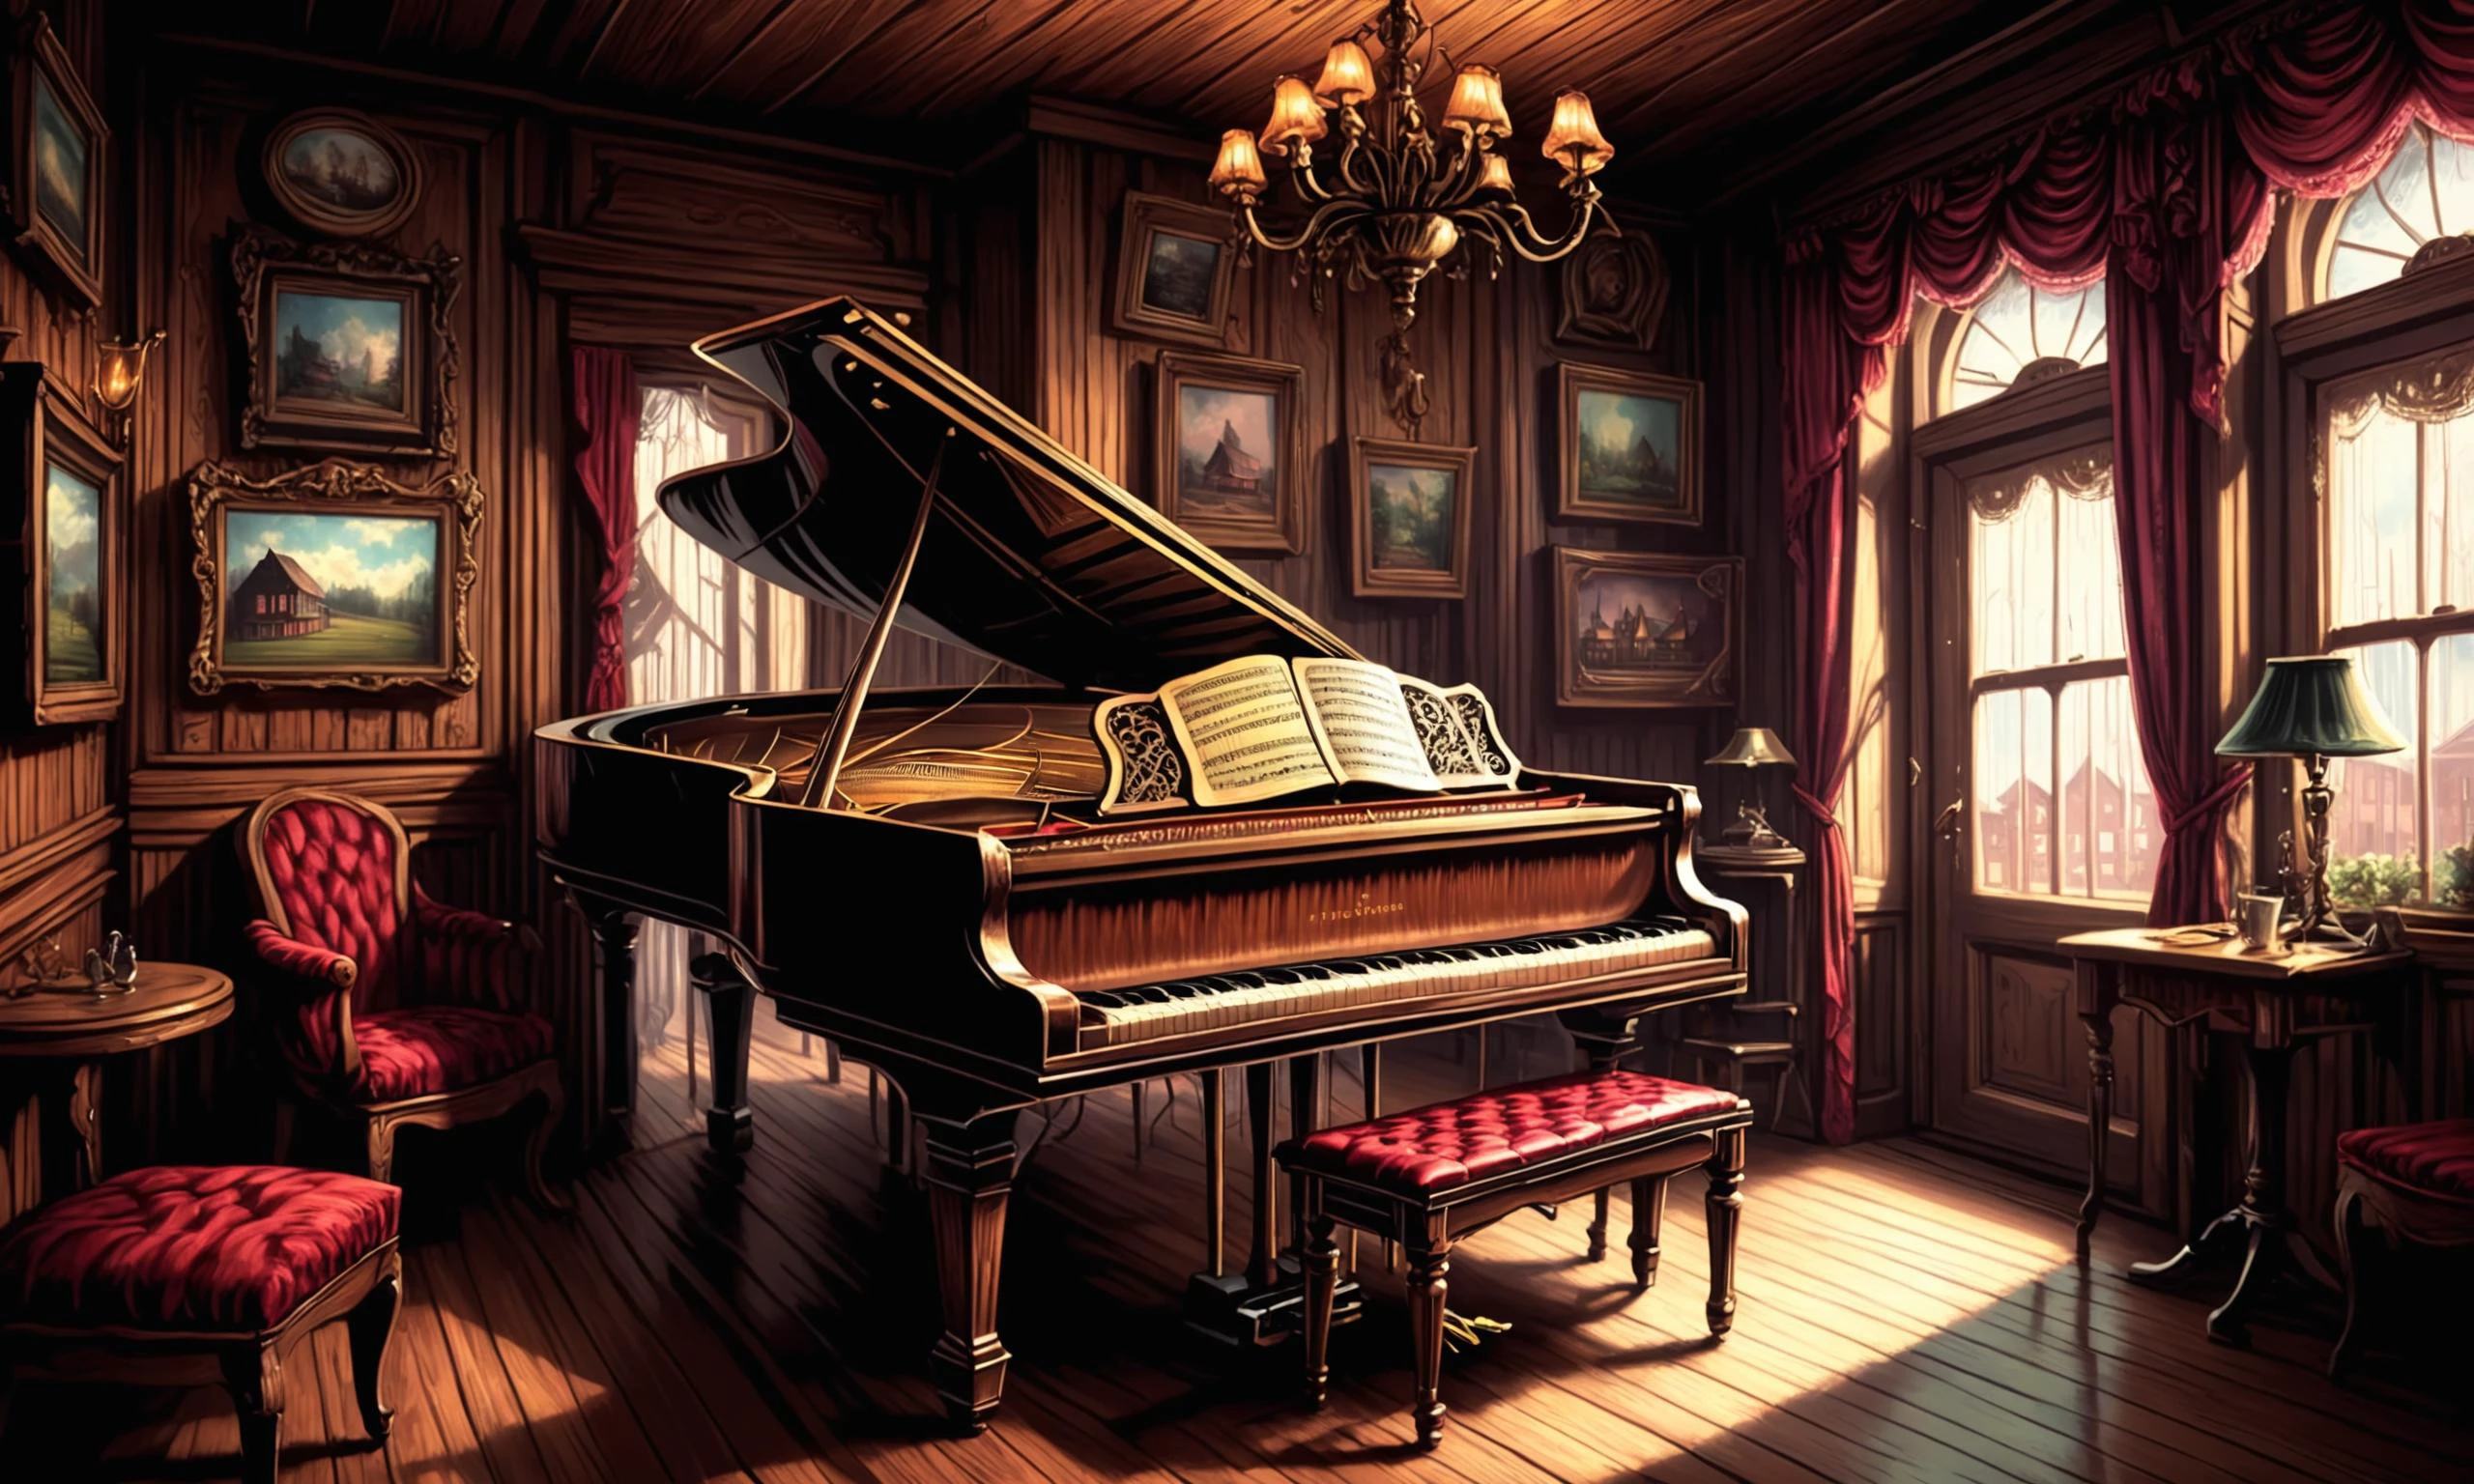 Linda ilustração digital detalhada de uma música de piano Tinkling em um salão Angst, fracolor